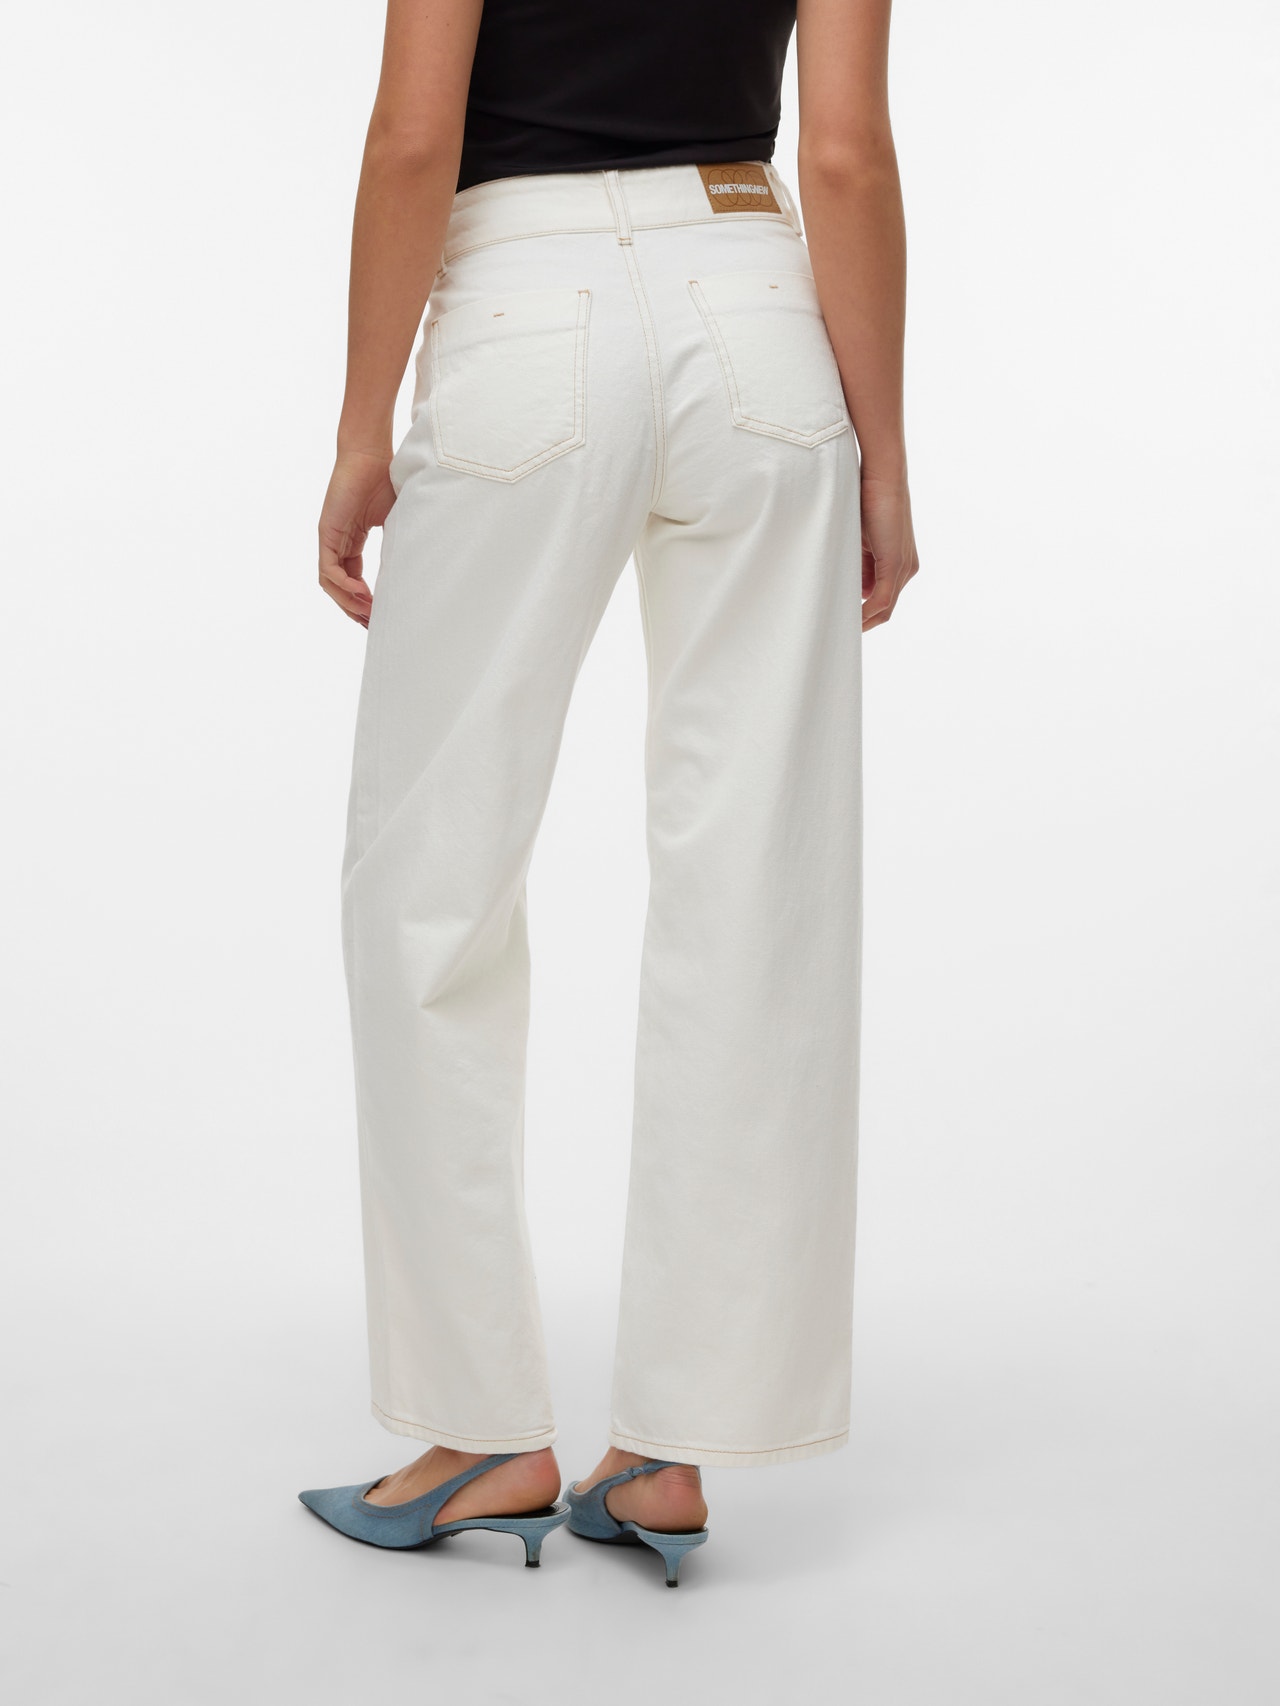 Vero Moda SOMETHINGNEW Jeans -White Denim - 10305265